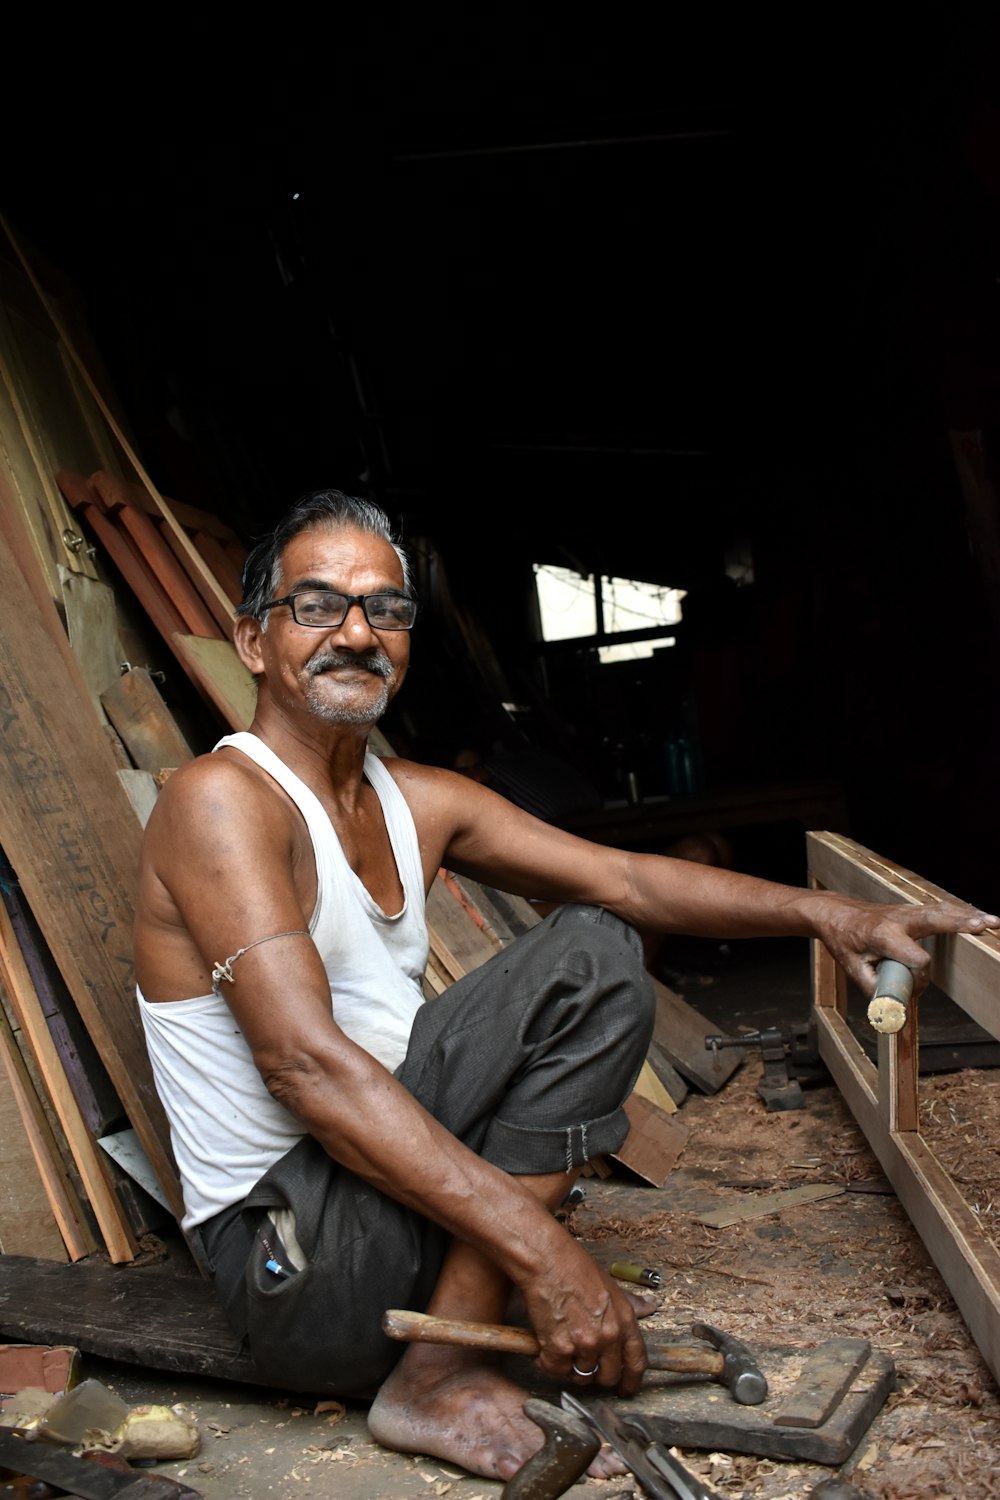 Un homme assis par terre travaillant sur un morceau de bois